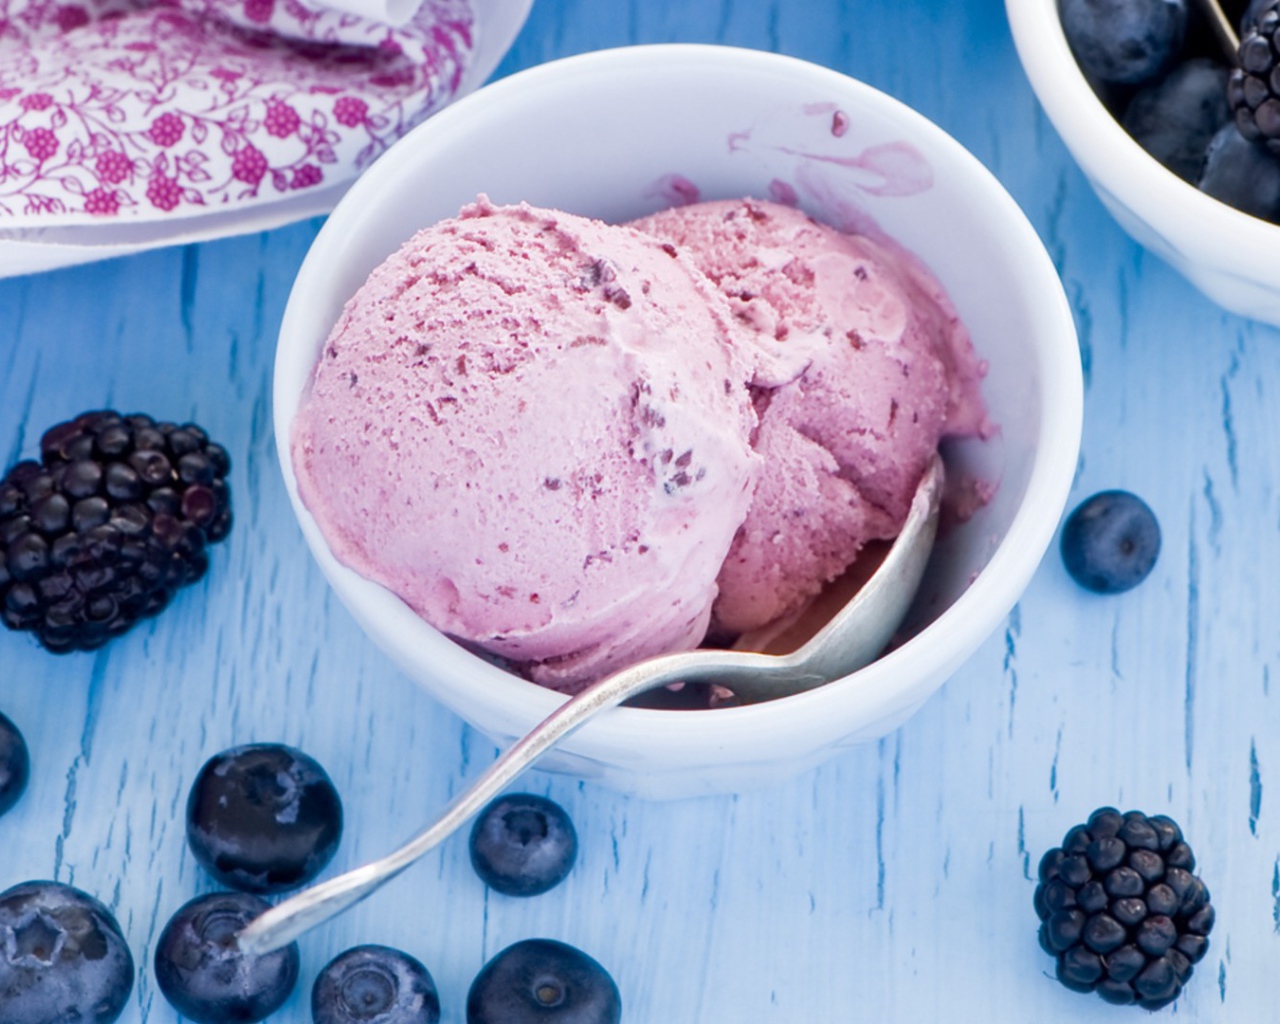 Ice cream with blackberries